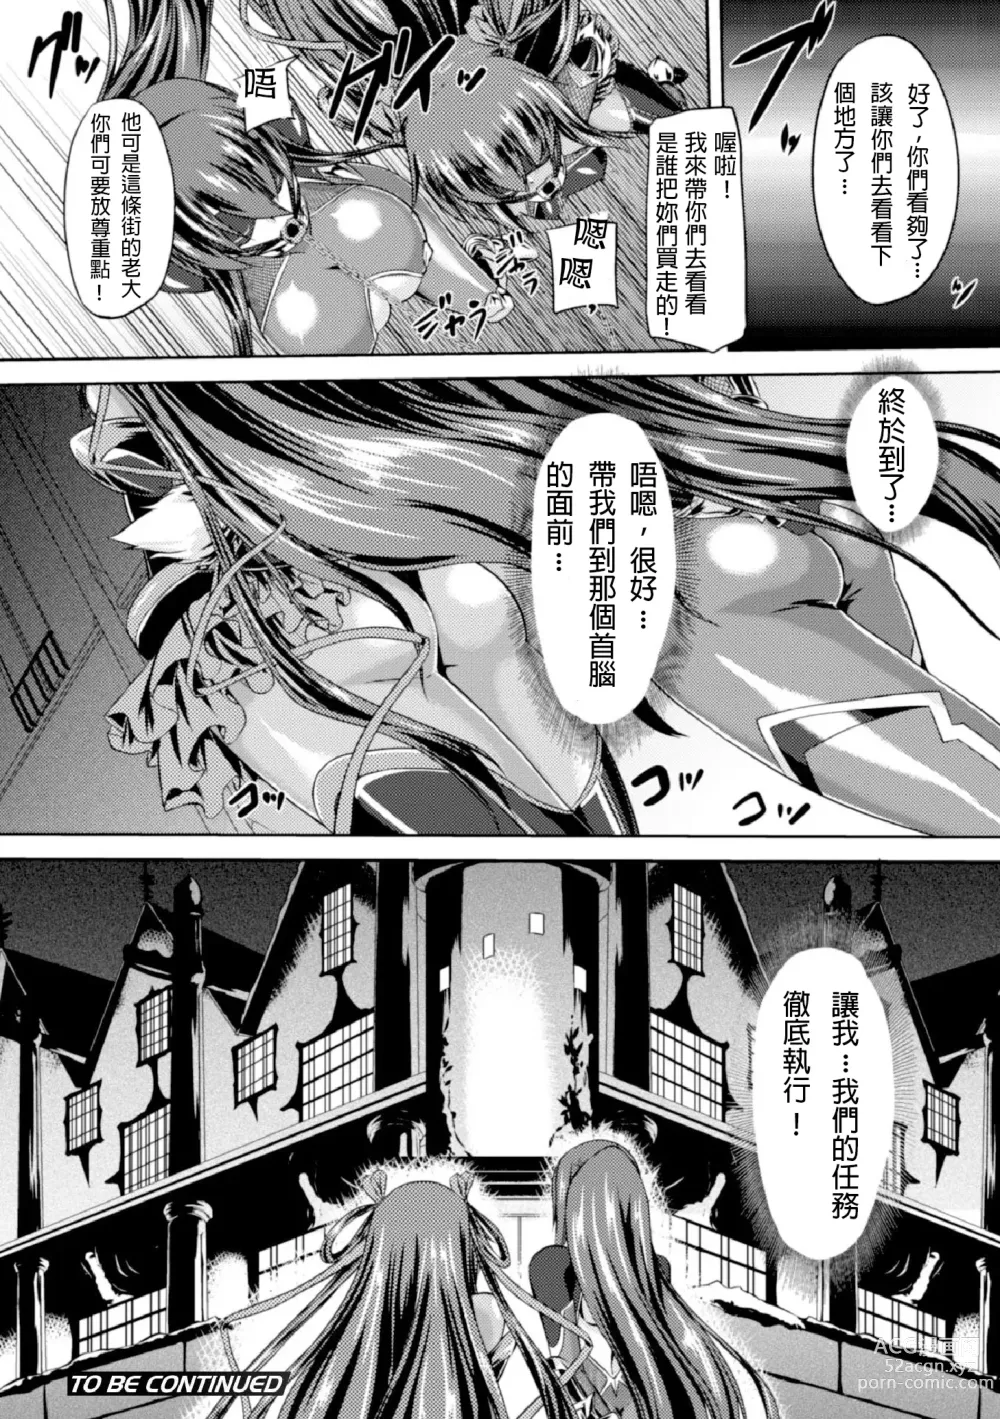 Page 14 of manga Taimanin Yukikaze ~Taimanin Wa Ingoku Ni Shizumu~